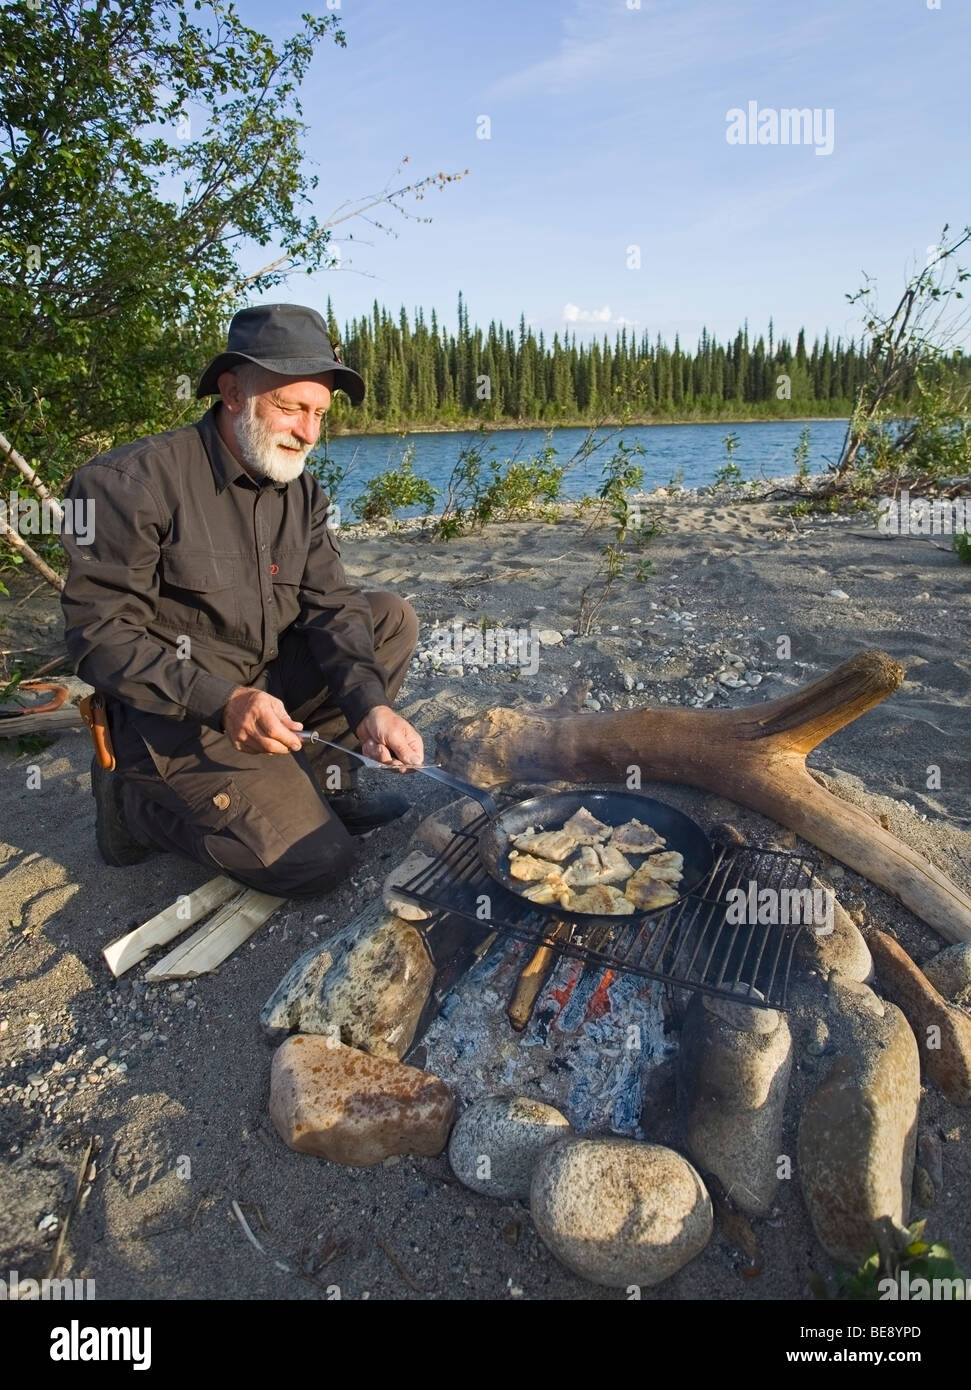 Mann, Kochen, braten Filets in einer Pfanne auf einem Lagerfeuer, oben Liard River, Yukon Territorium, Kanada Stockfoto